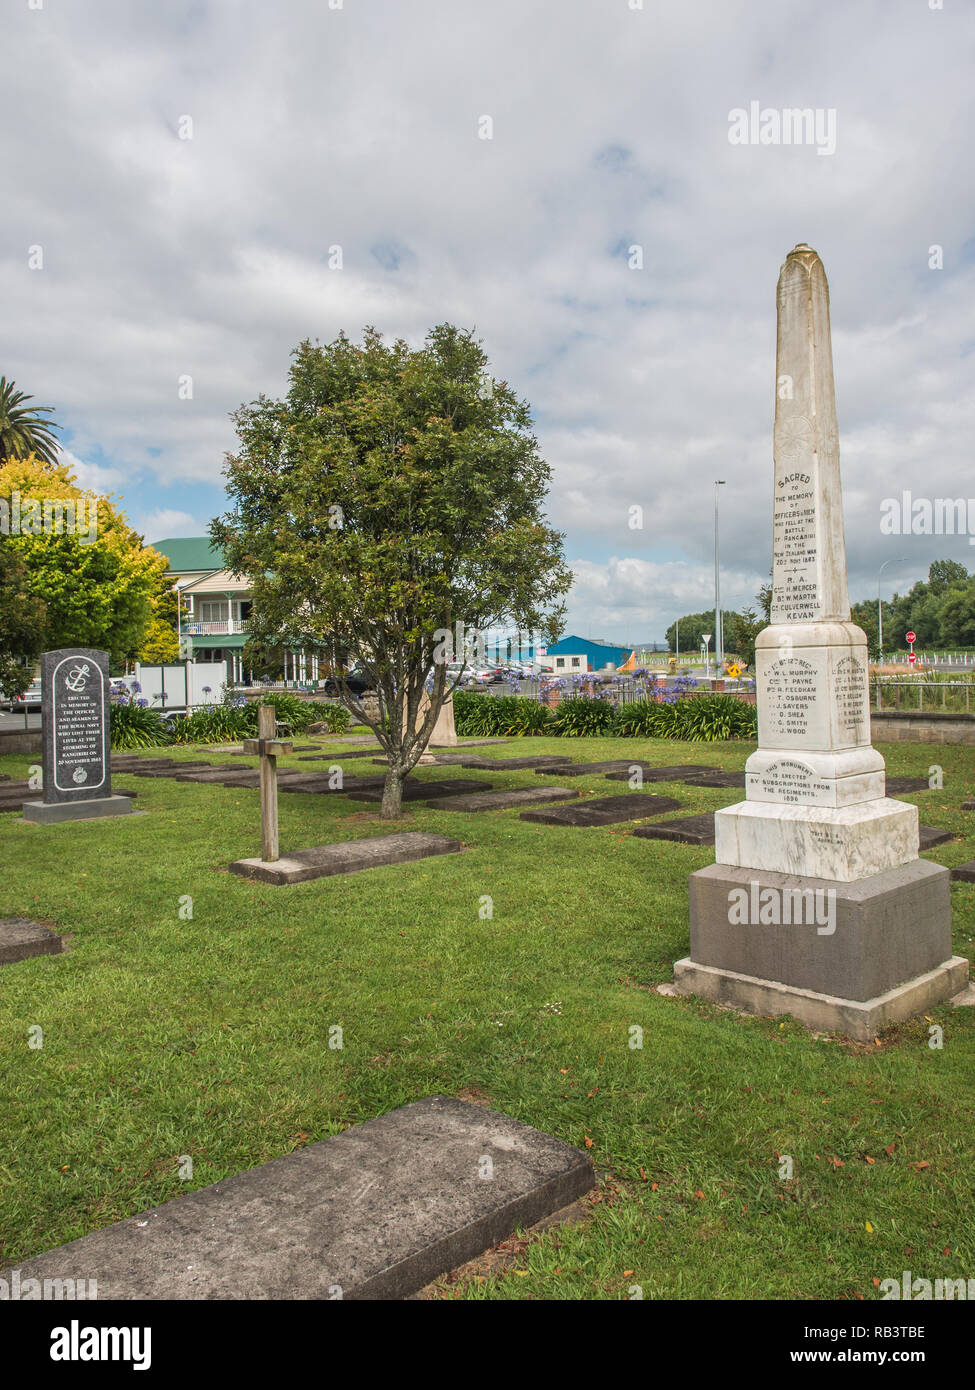 Monumento a los soldados británicos muertos en la batalla de Rangiriri, guerra maorí y los primeros colonos cementerio, Rangiriri, Waikato, Nueva Zelanda Foto de stock